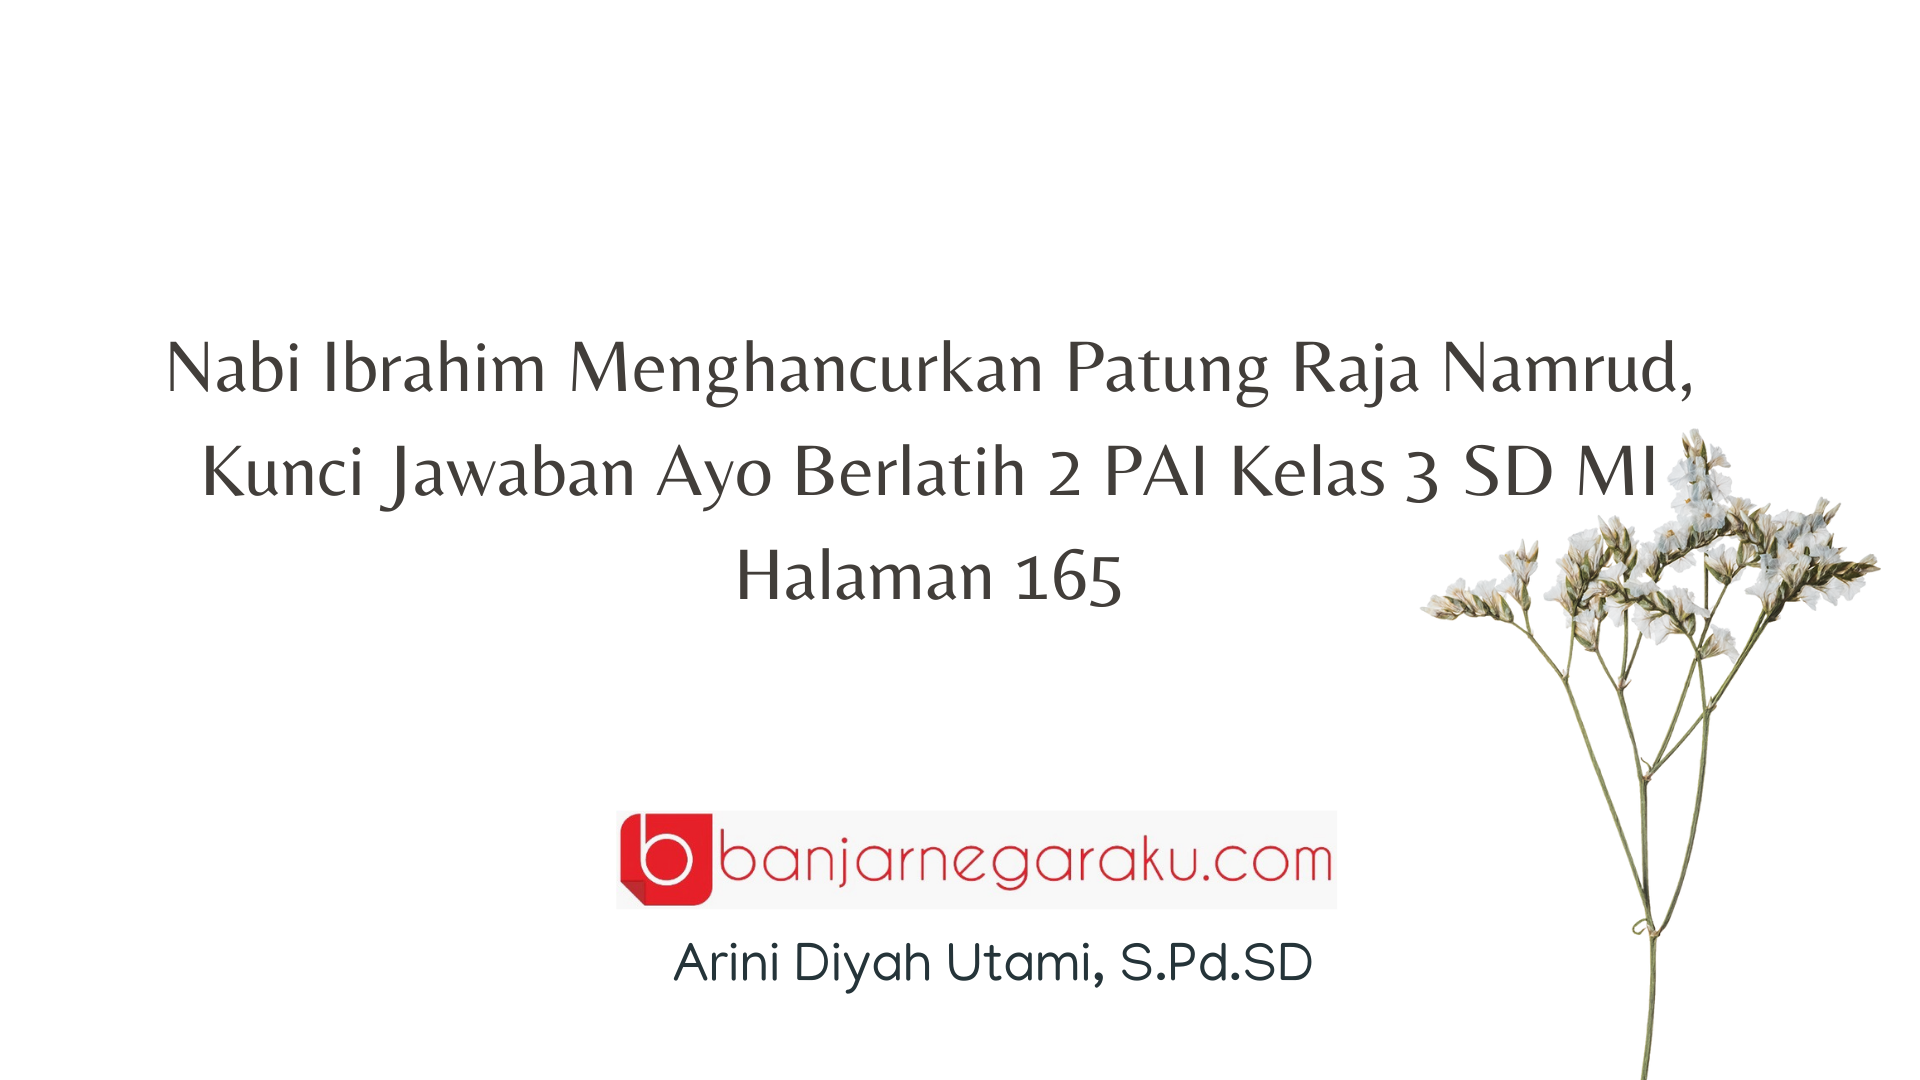 Nabi Ibrahim Menghancurkan Patung Raja Namrud, Kunci Jawaban Ayo Berlatih 2 PAI Kelas 3 SD MI Halaman 165